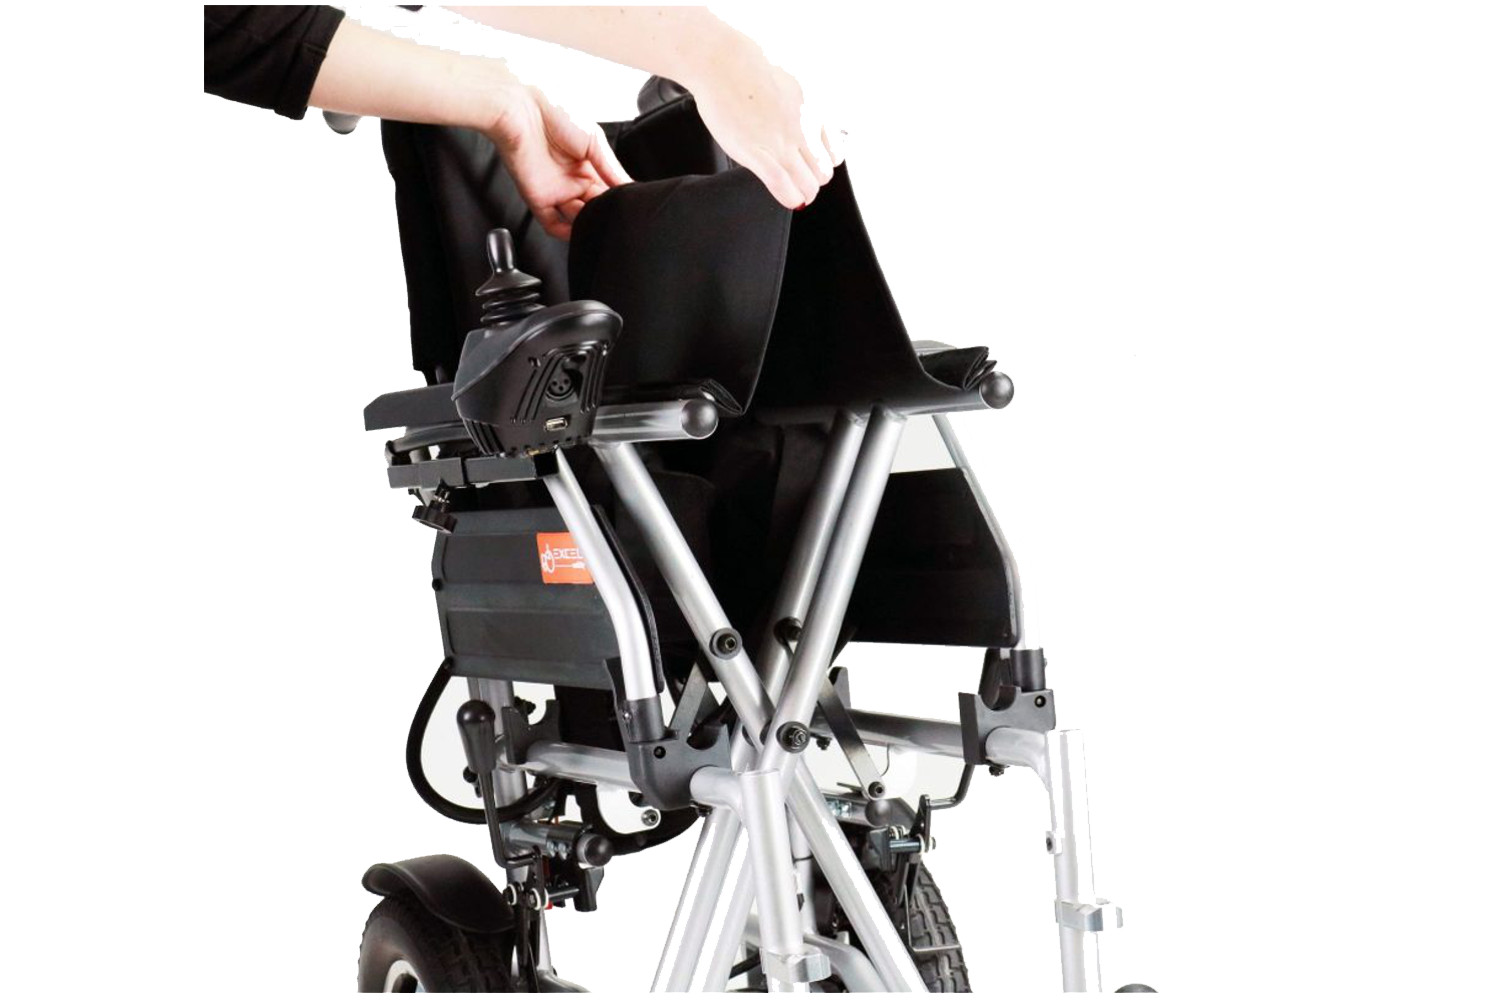 Elektrický invalidní vozík Excel Qnect